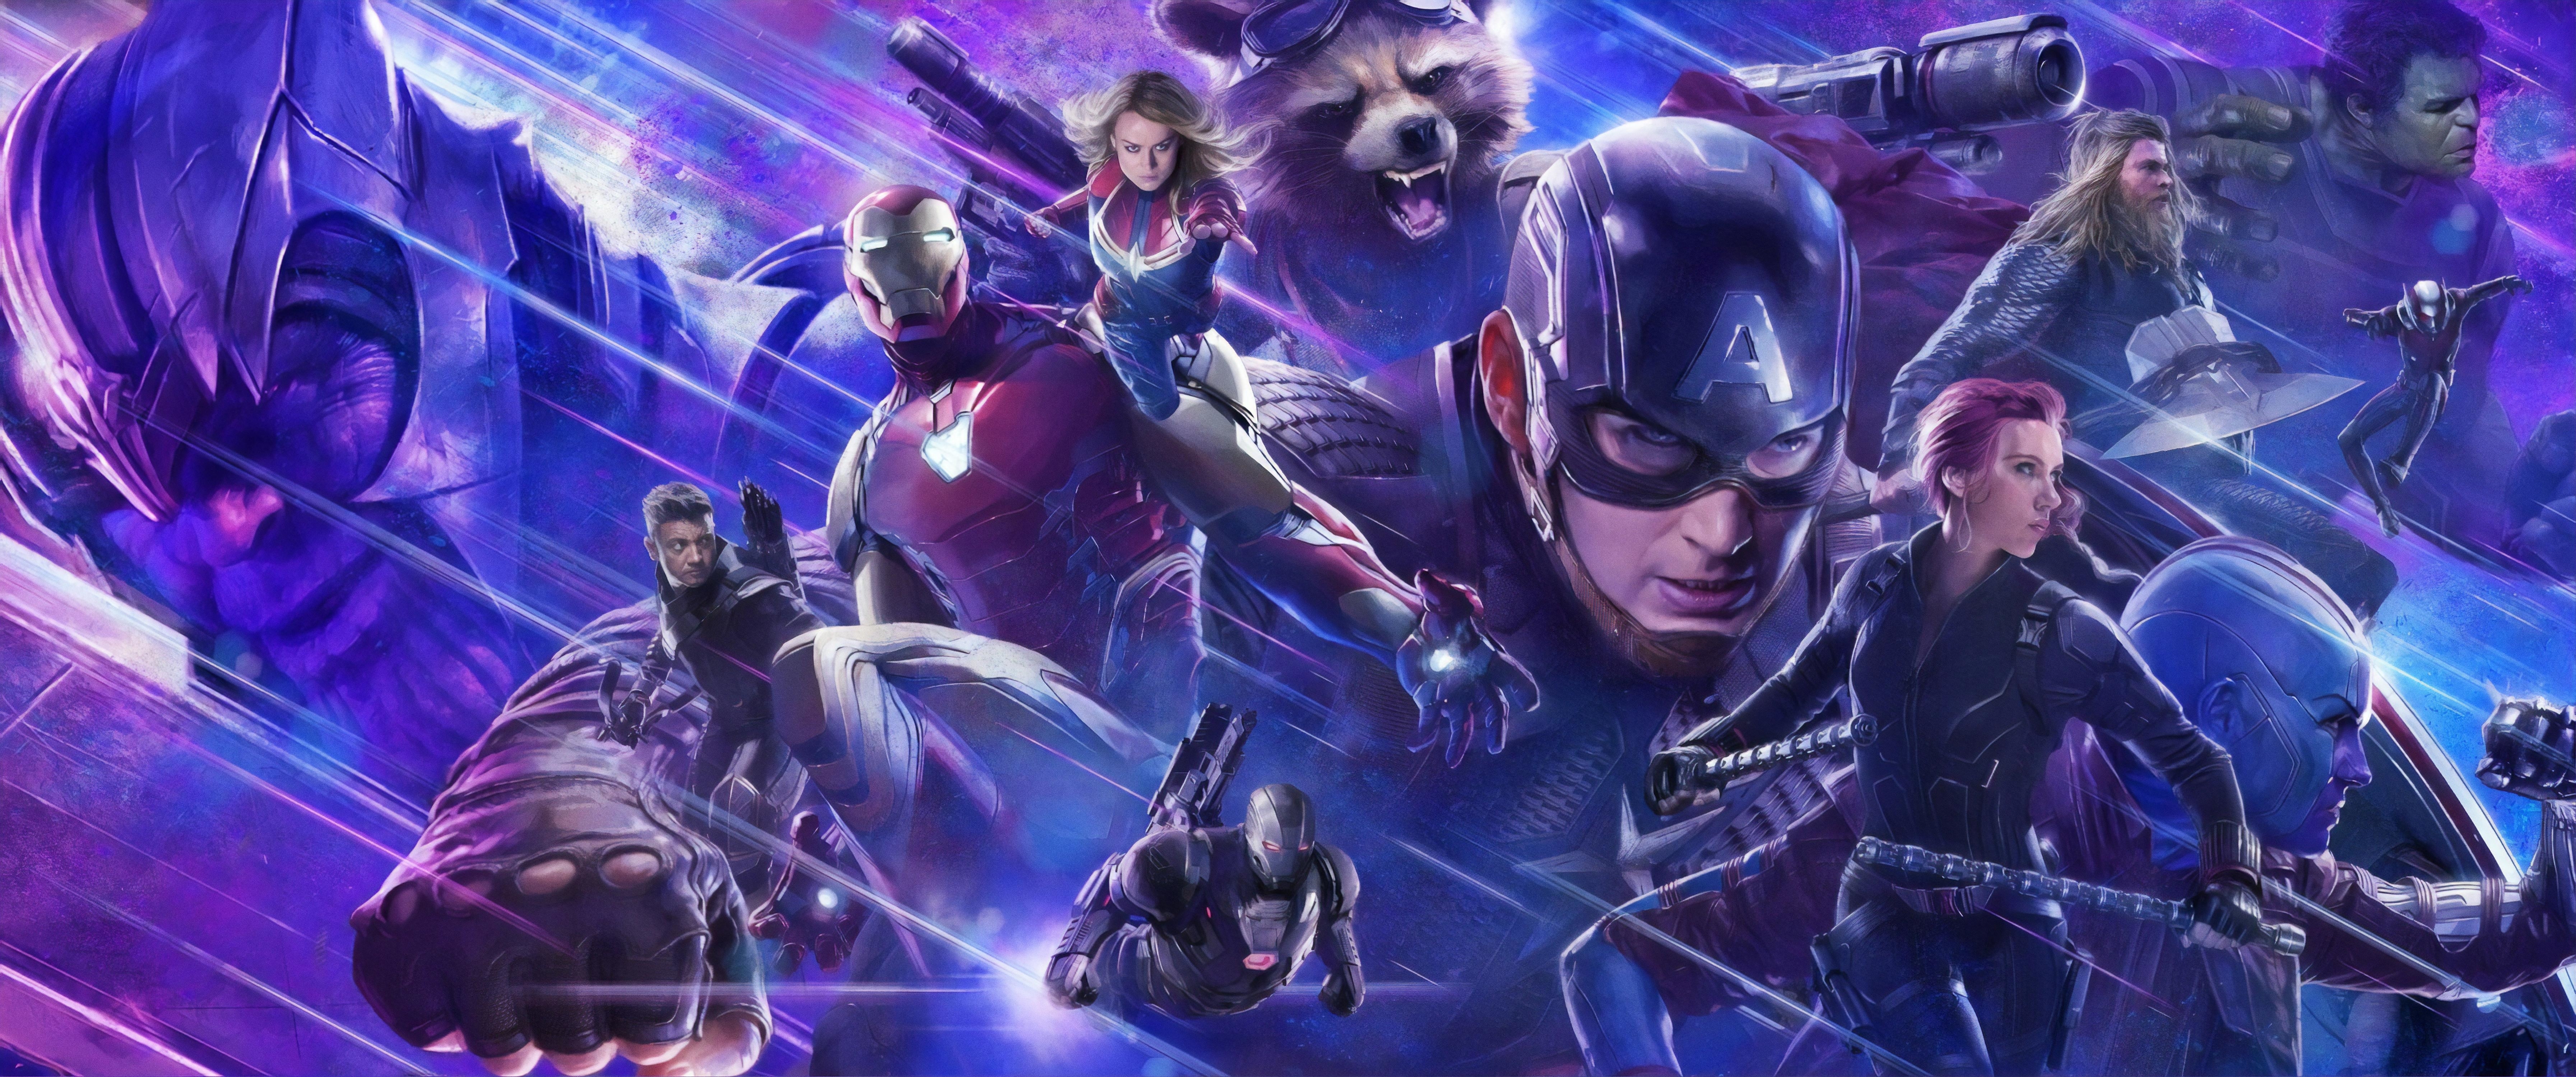 download Avengers: Endgame